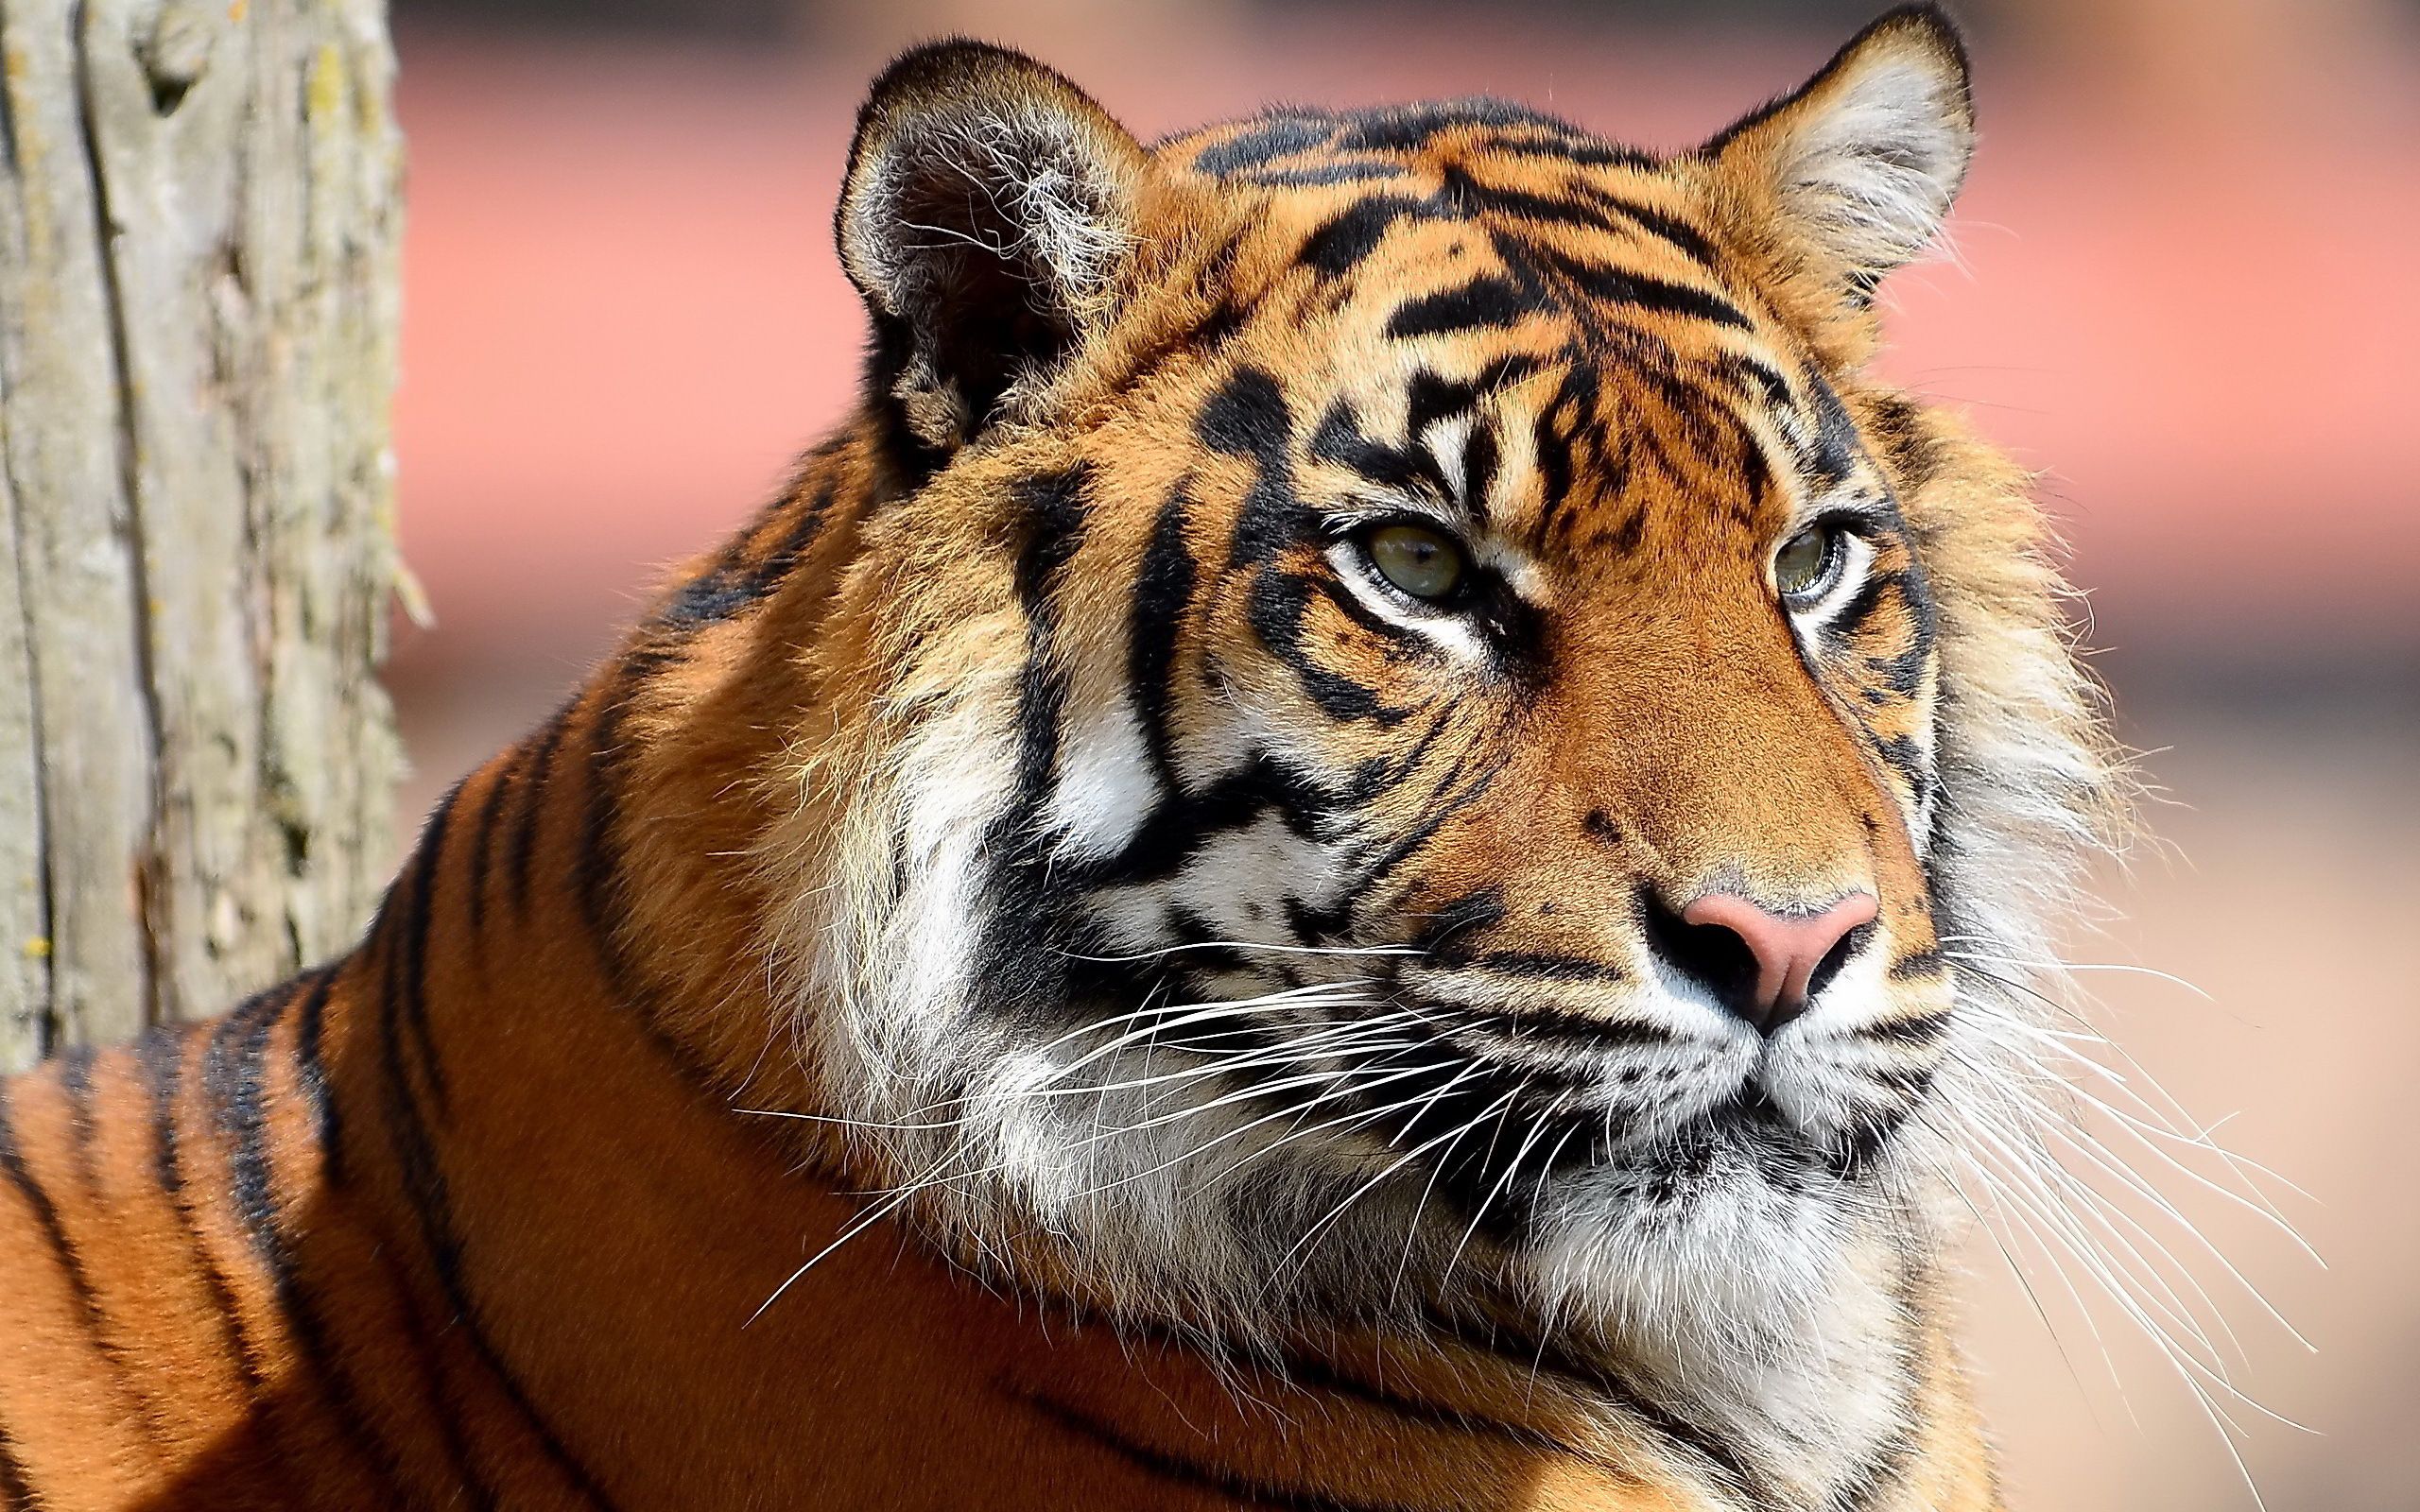 Tiger closeup